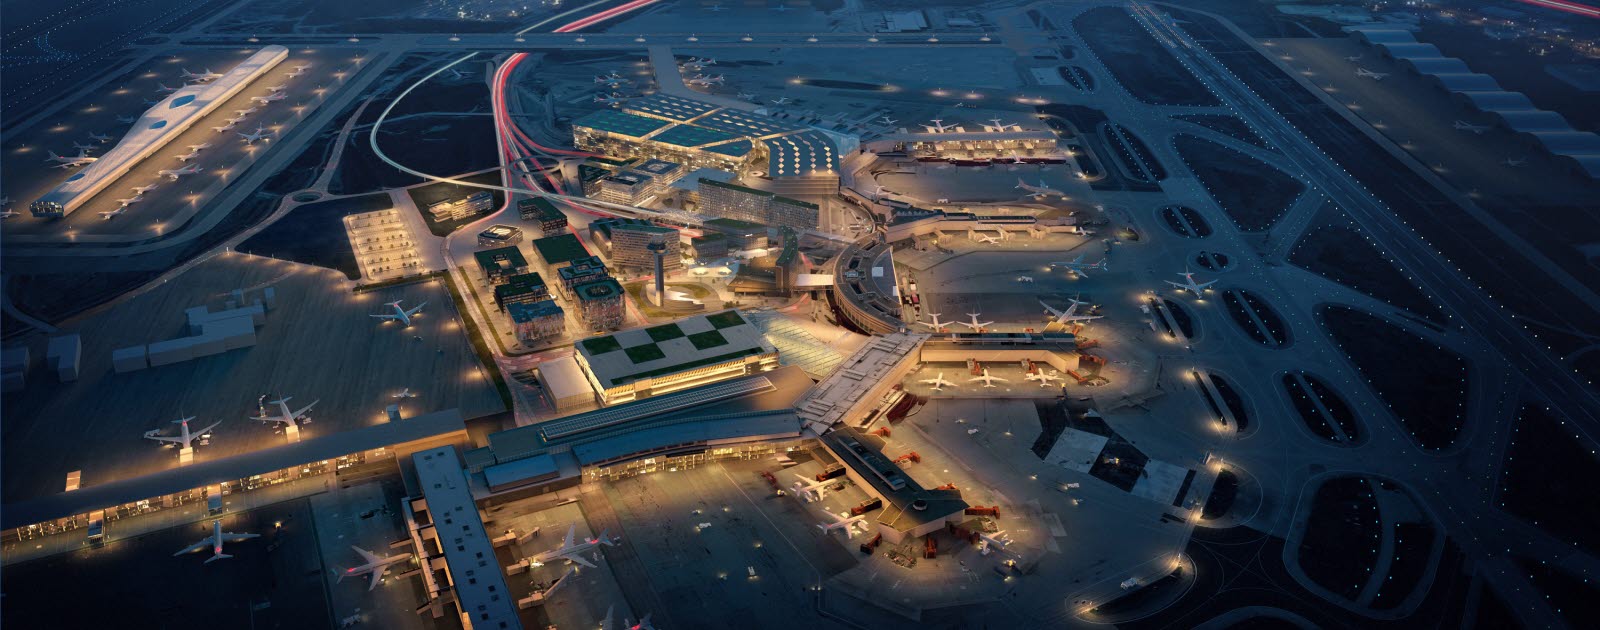 Stockholm Arlanda Airport vision 2040